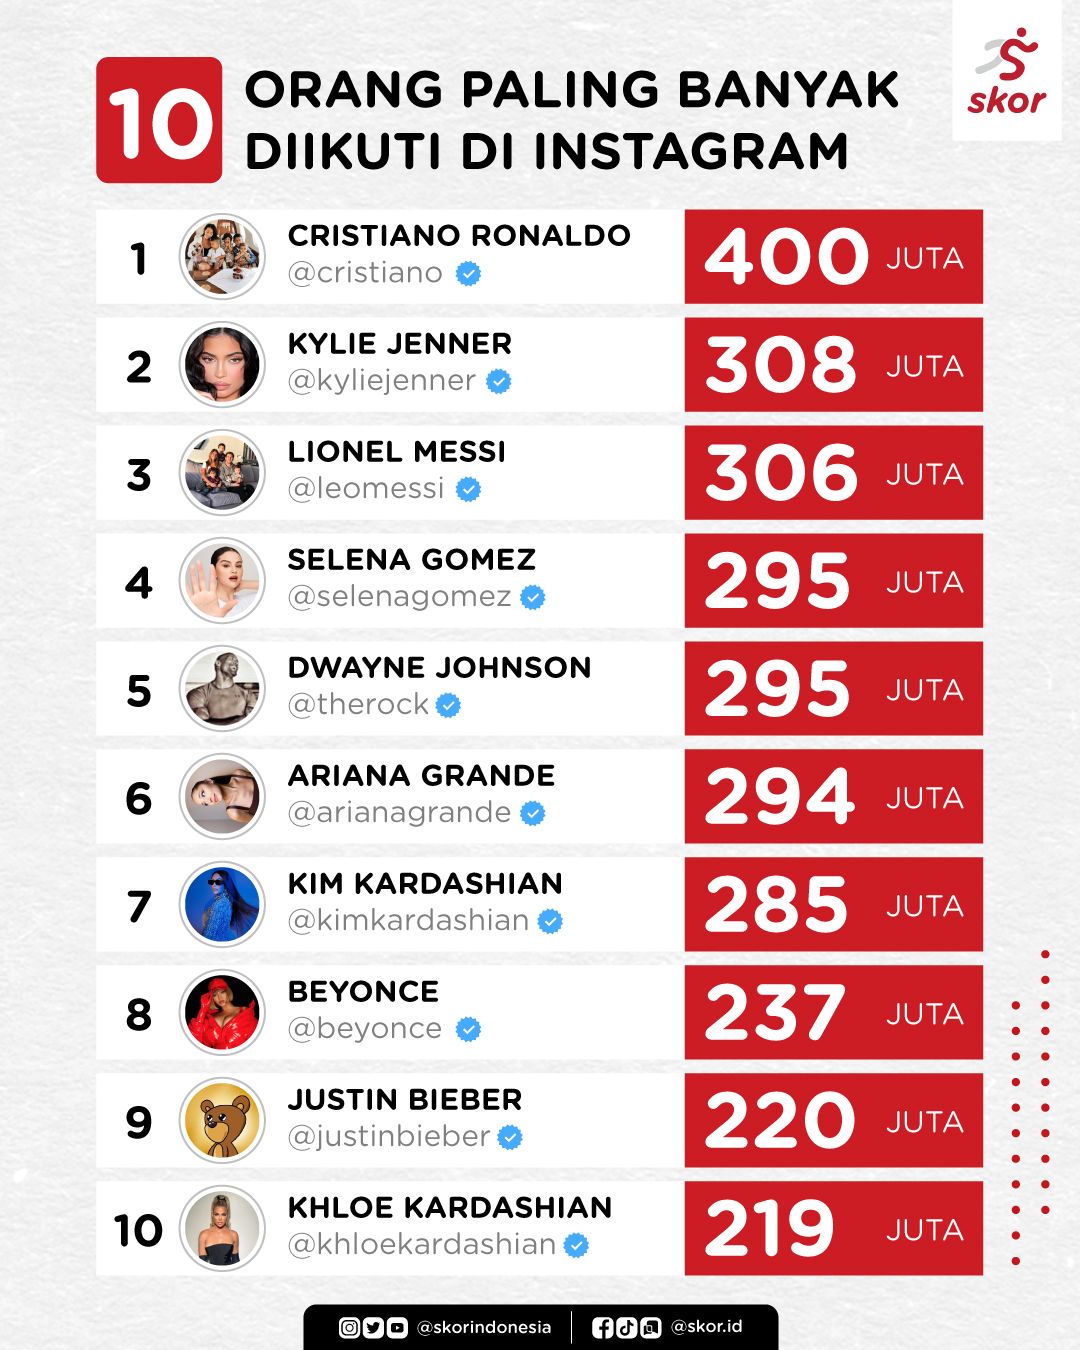 10 orang paling banyak diikuti di Instagram